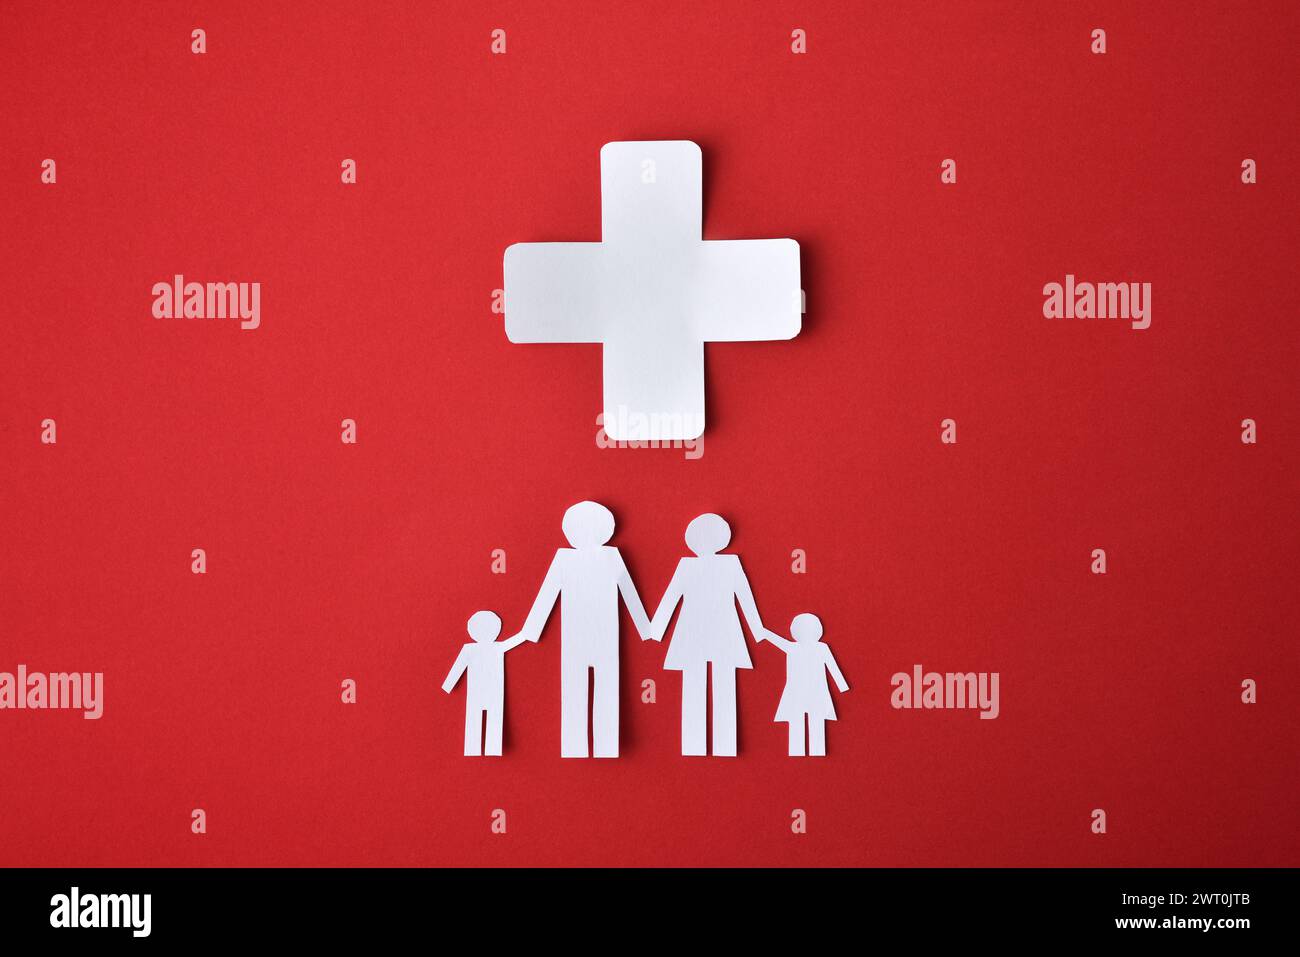 Konzept der Gesundheitshilfe für bedürftige Familien mit Familienausschnitten und Weißbuch-Querschnitt isoliert auf rotem Hintergrund. Draufsicht Stockfoto